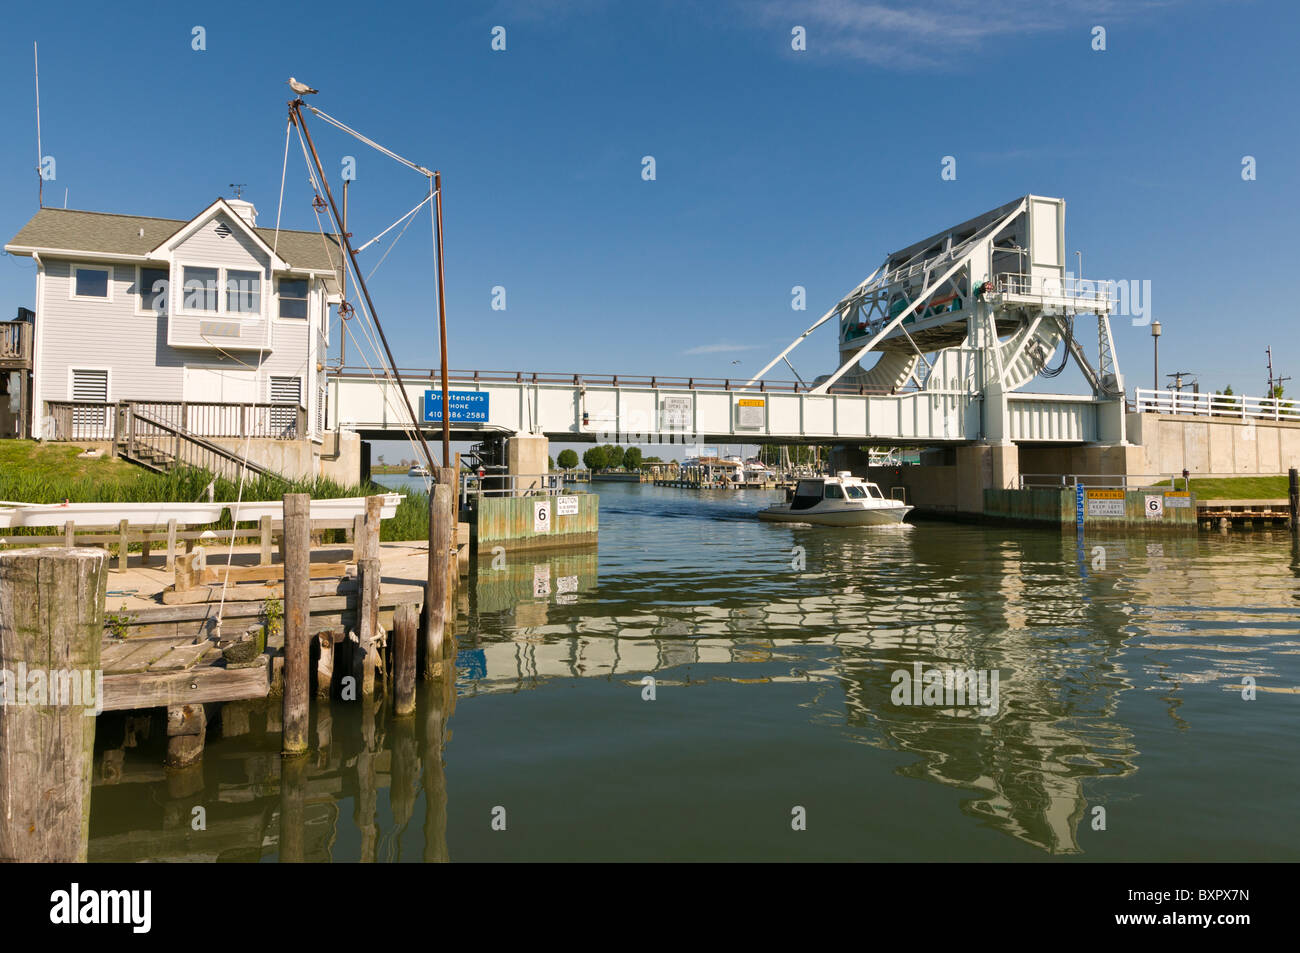 Knapps Narrows, pont-levis pont-levis le plus occupé dans l'United States,Tilghman Island, Talbot County, Maryland USA Banque D'Images